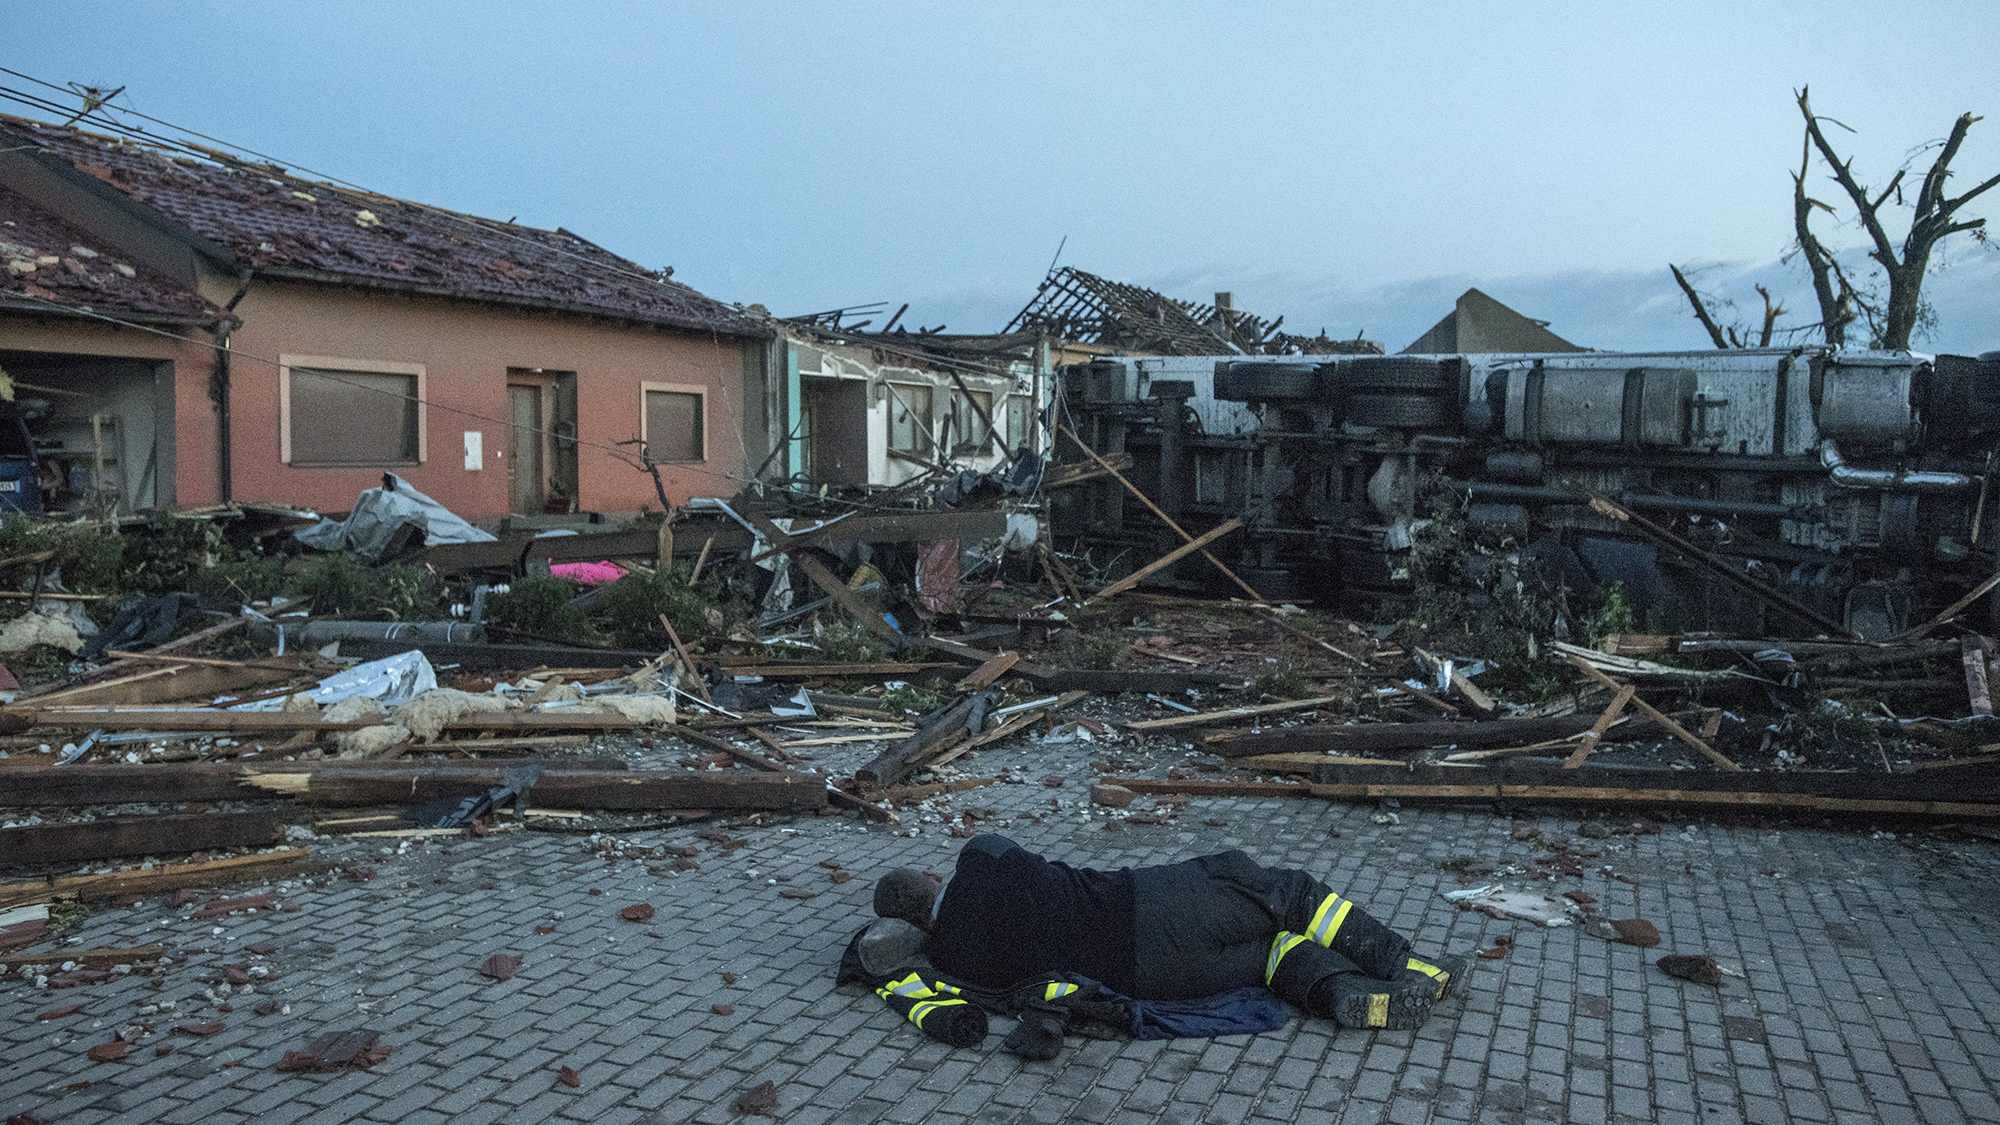 Felborult autók, tető nélküli házak, letarolt temető – így pusztított a tornádó Csehországban